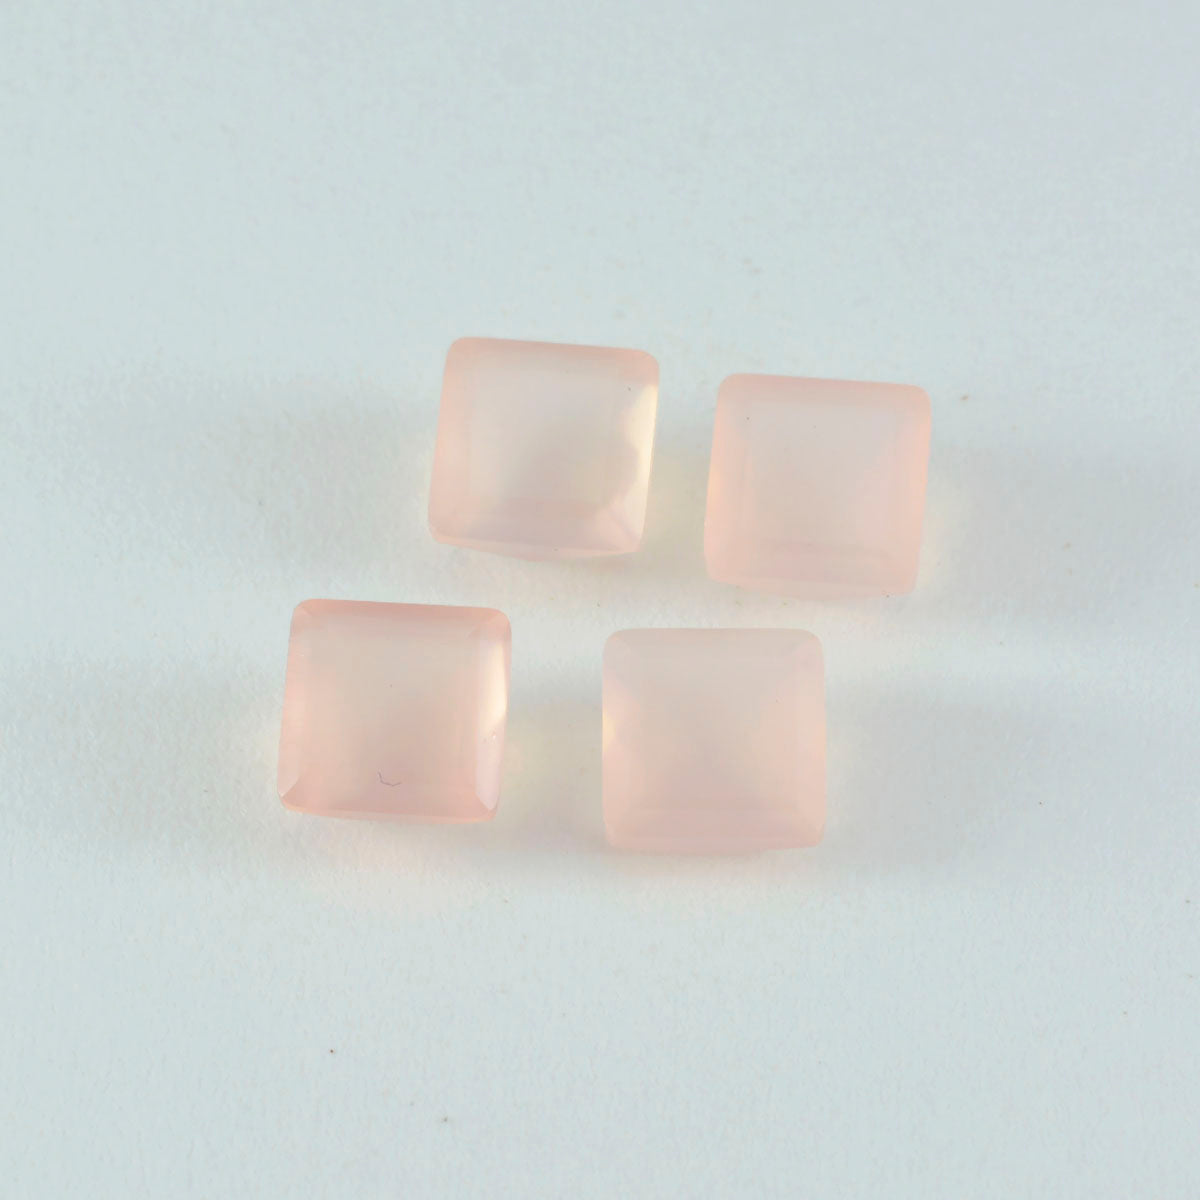 riyogems 1 шт., розовый кварц, граненые 15x15 мм, квадратная форма, красивые качественные драгоценные камни